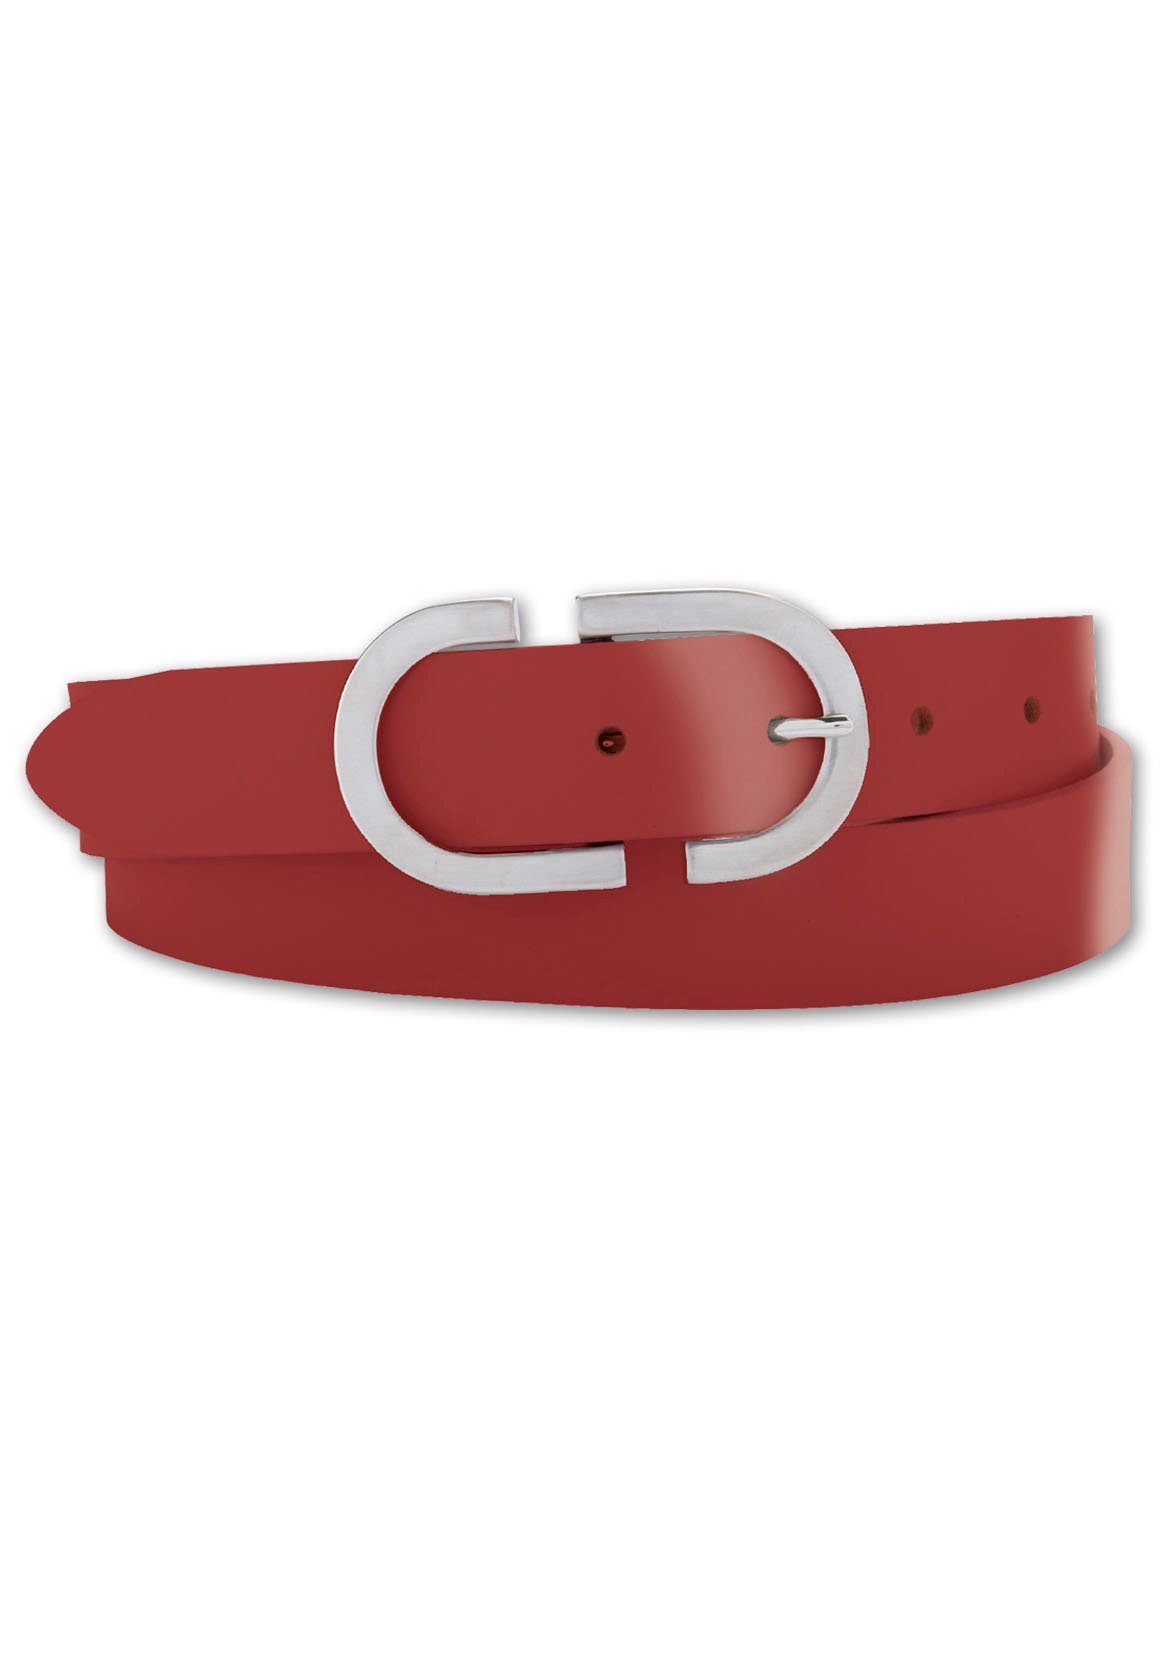 BERND GÖTZ Ledergürtel mit stylischer, kreativer Designschließe rot